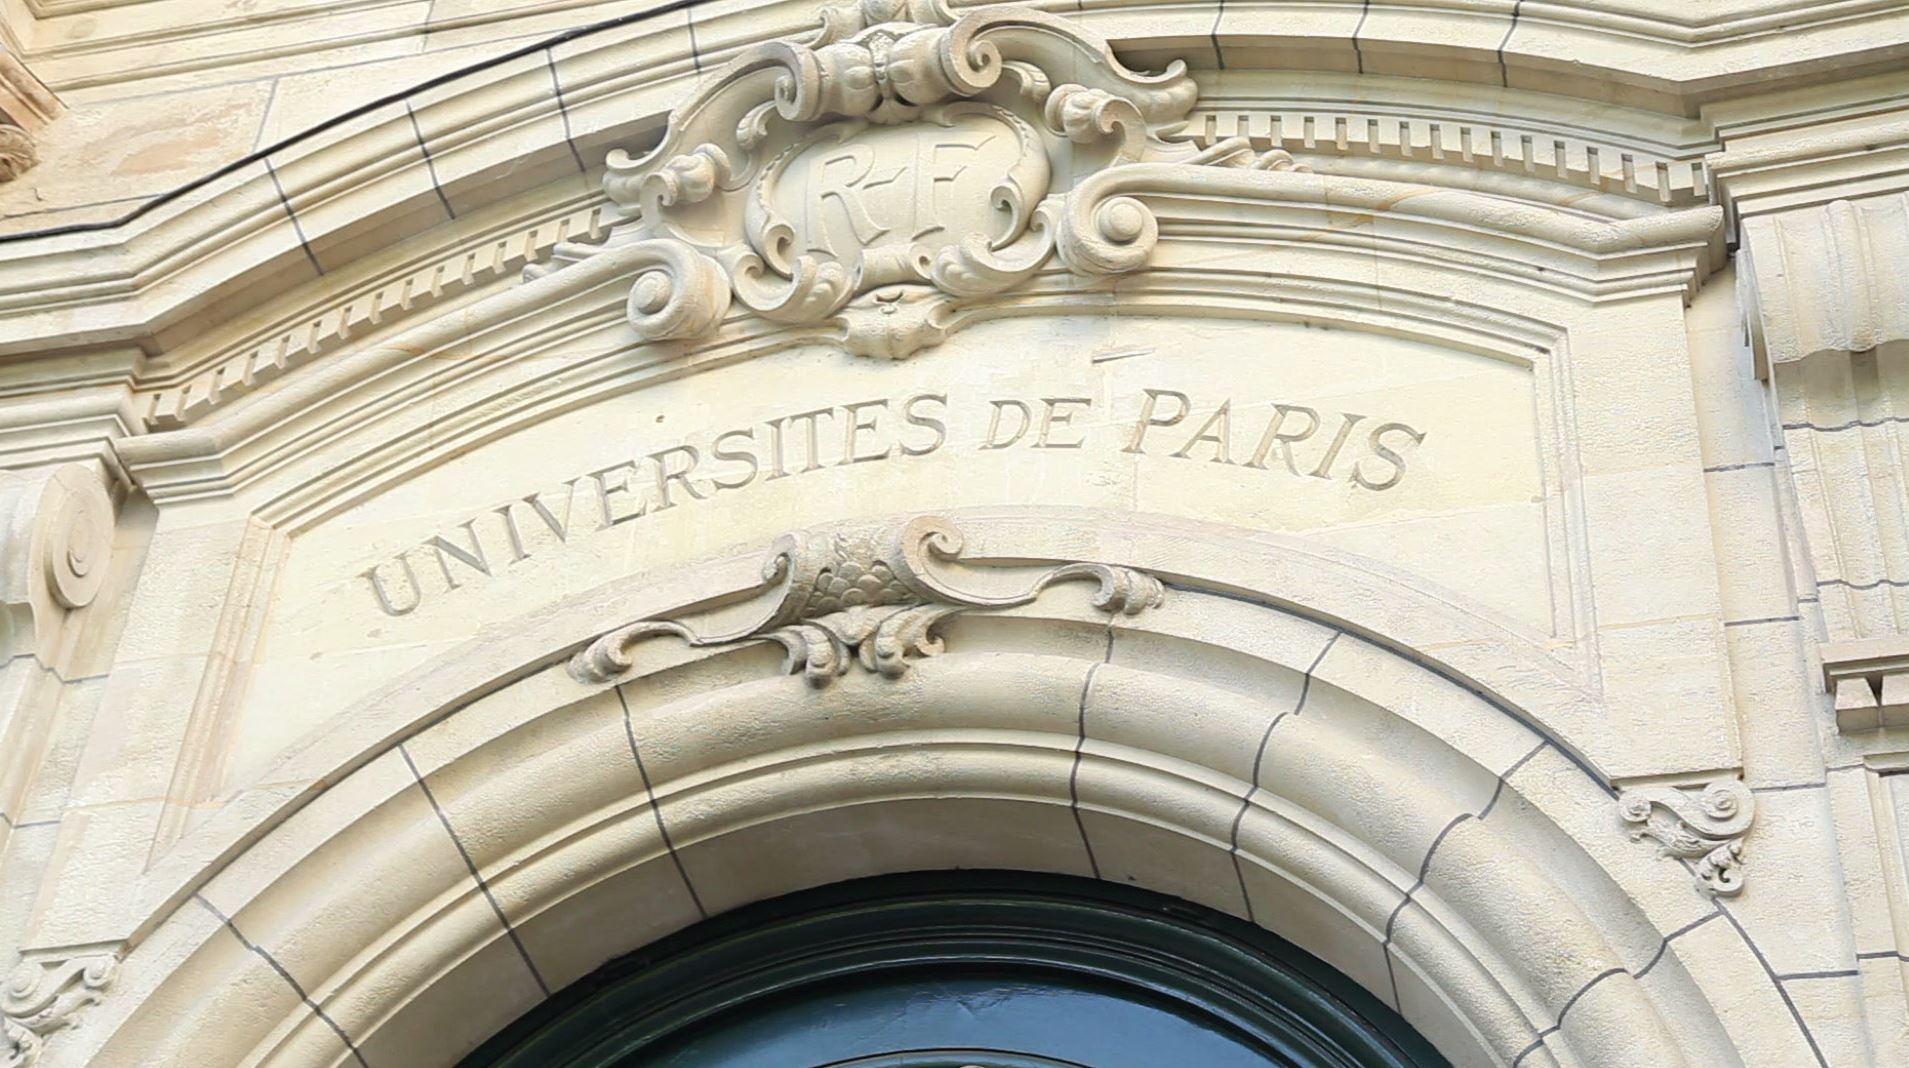 بورسیه کارشناسی ارشد دانشگاه پاریس فرانسه برای سال 2023-2022